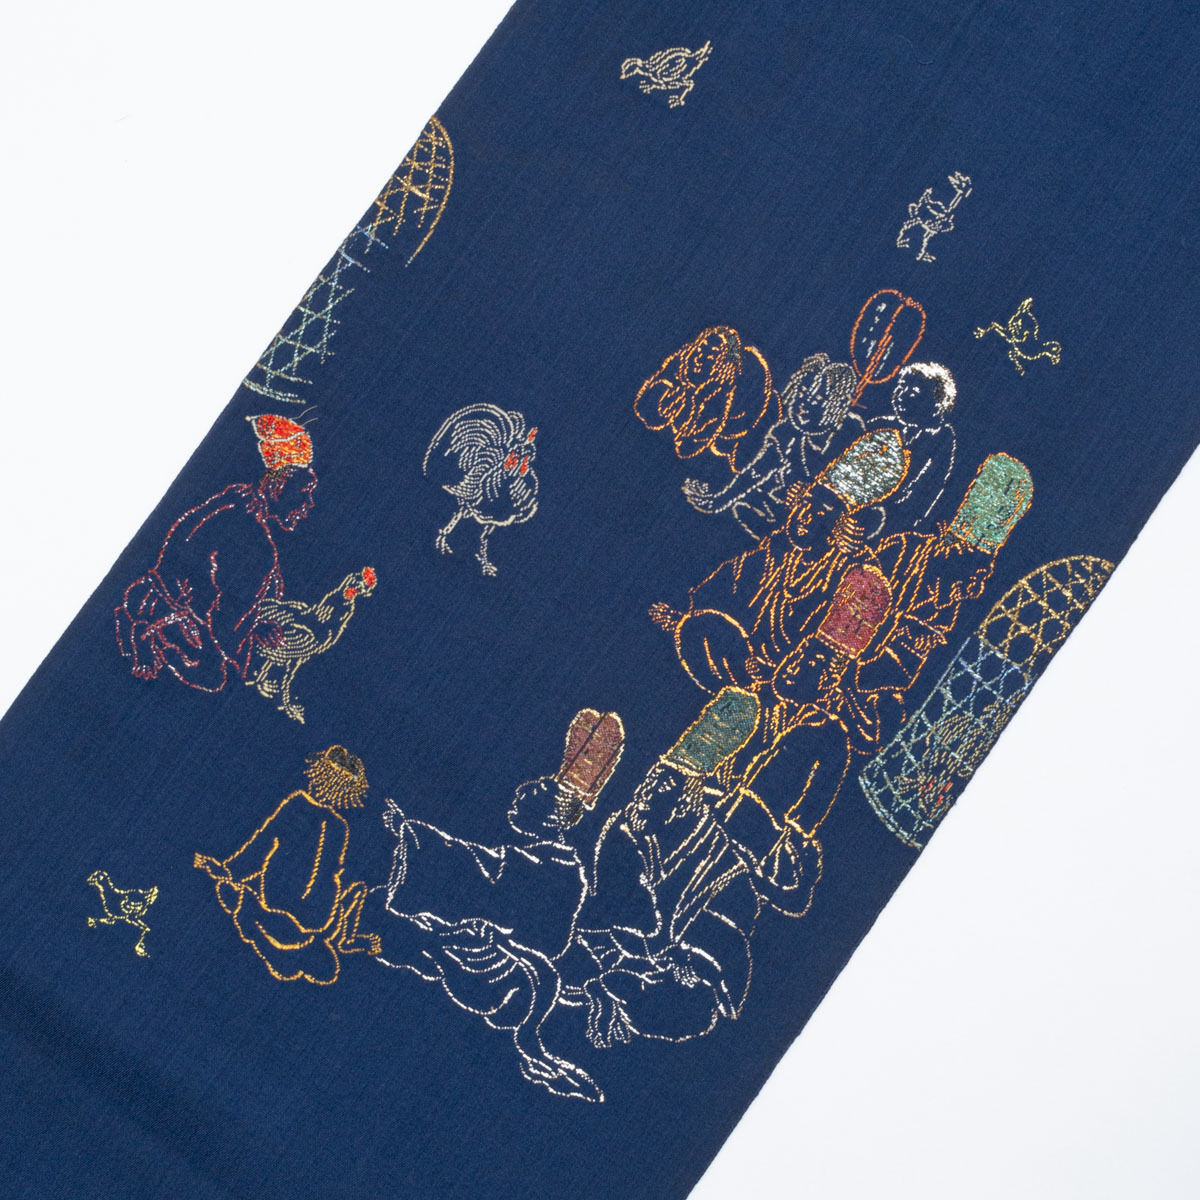 龍村平蔵 袋帯 鶏売りと町人の図 風俗画 濃紺 西陣織 正絹の画像3